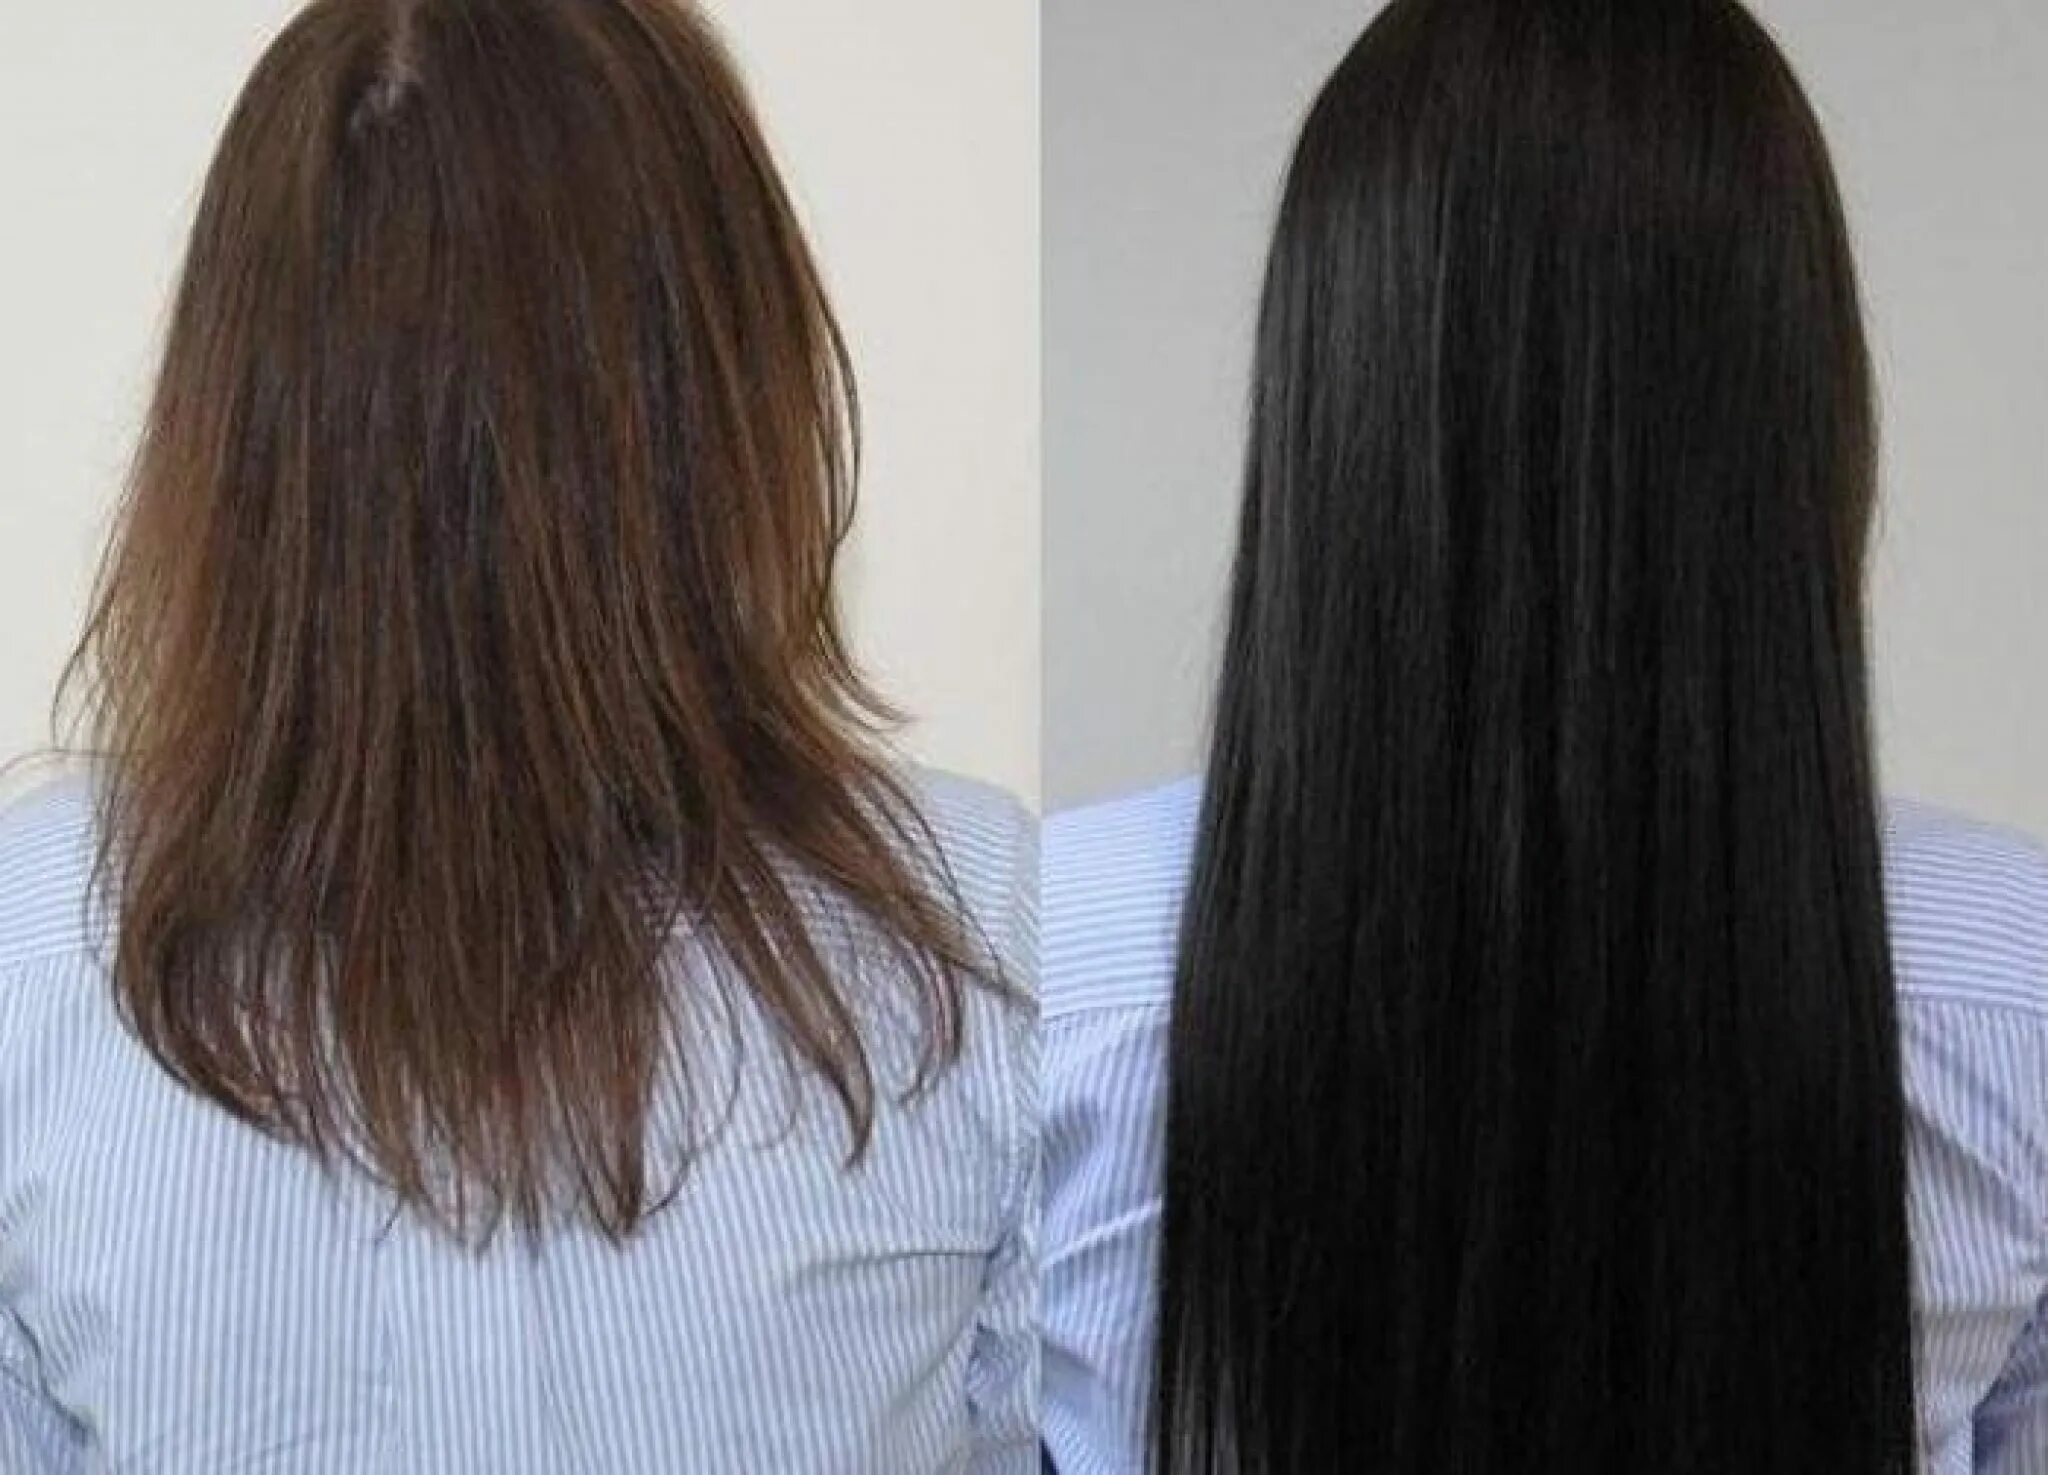 Волосы до после. Наращивание волос до и после. Нарощенные волосы до и после. Наращивание волос фото до и после.